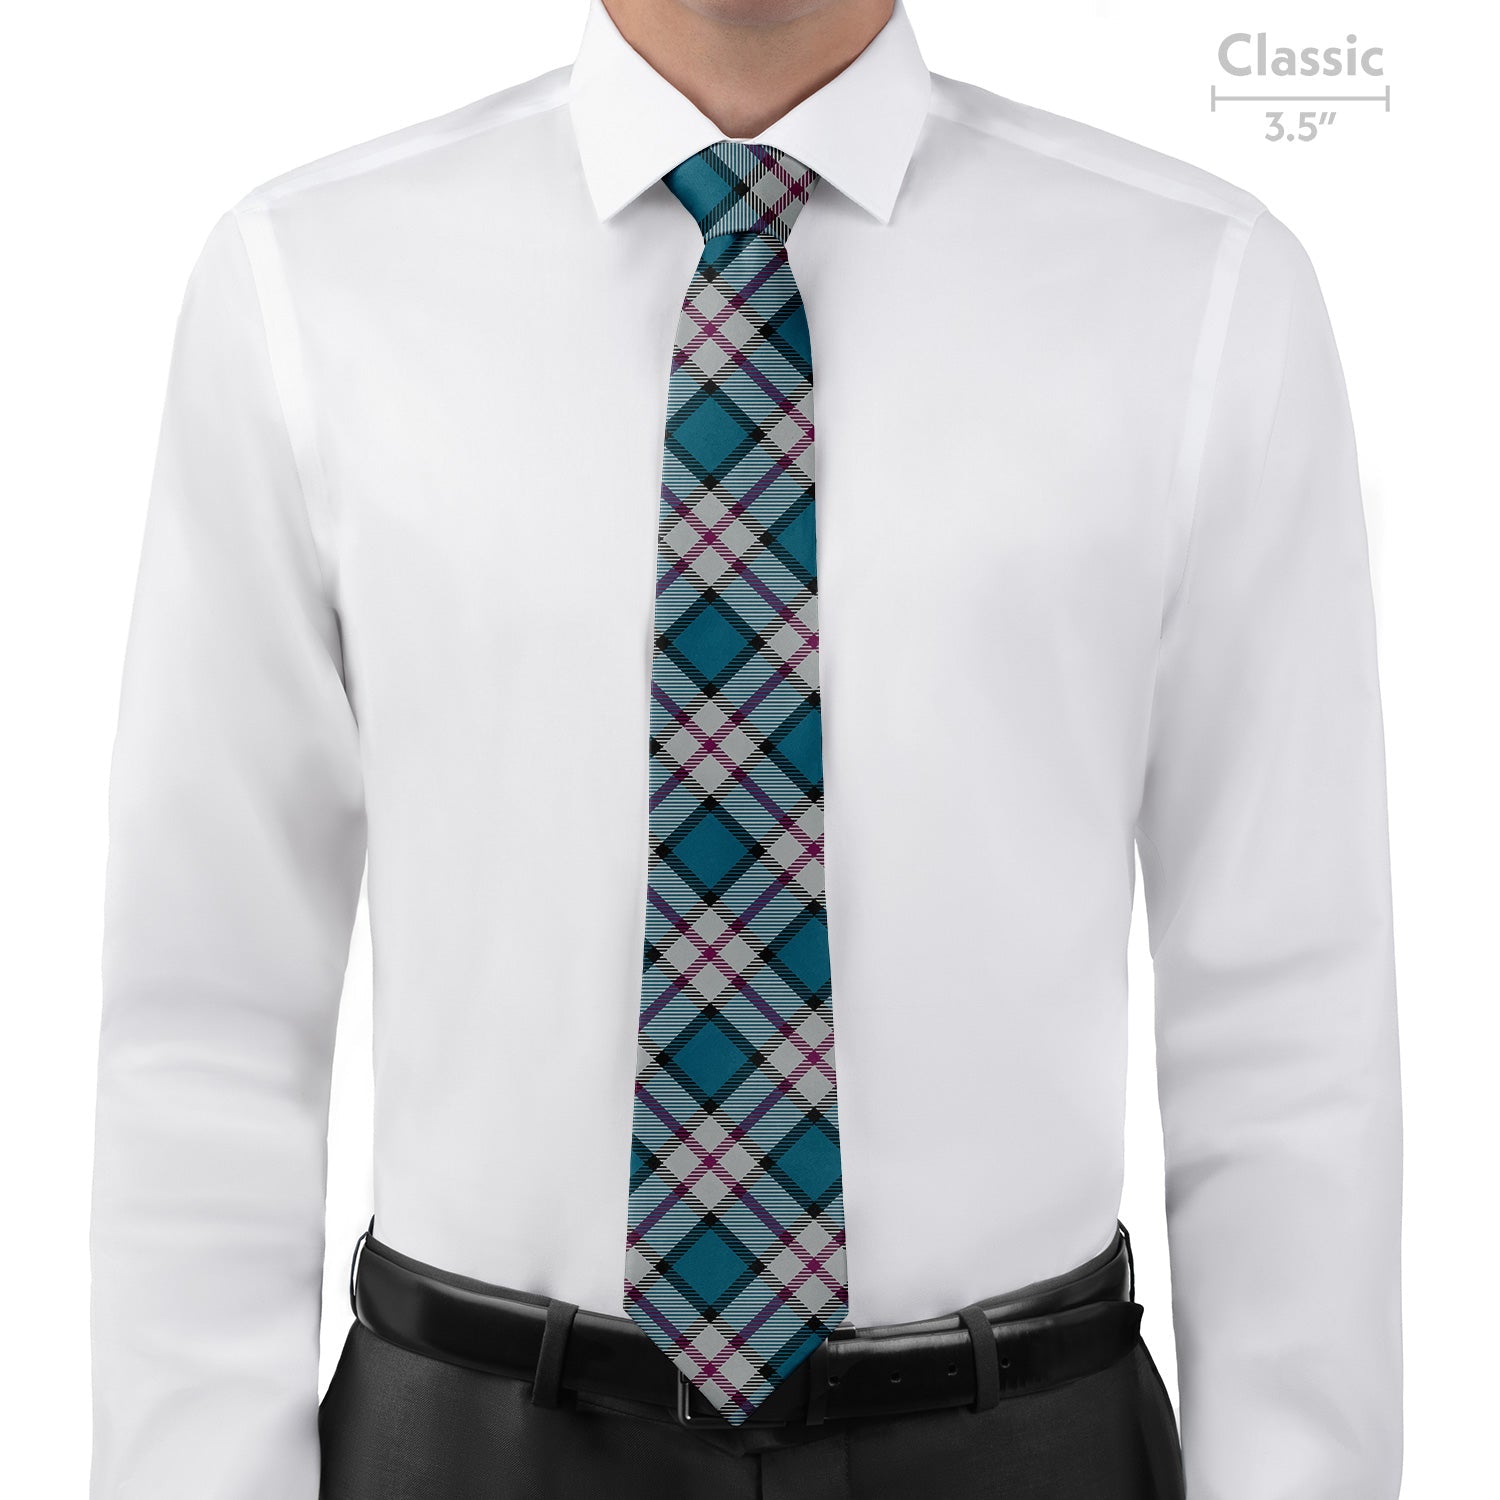 Harrison Plaid Necktie - Classic - Knotty Tie Co.